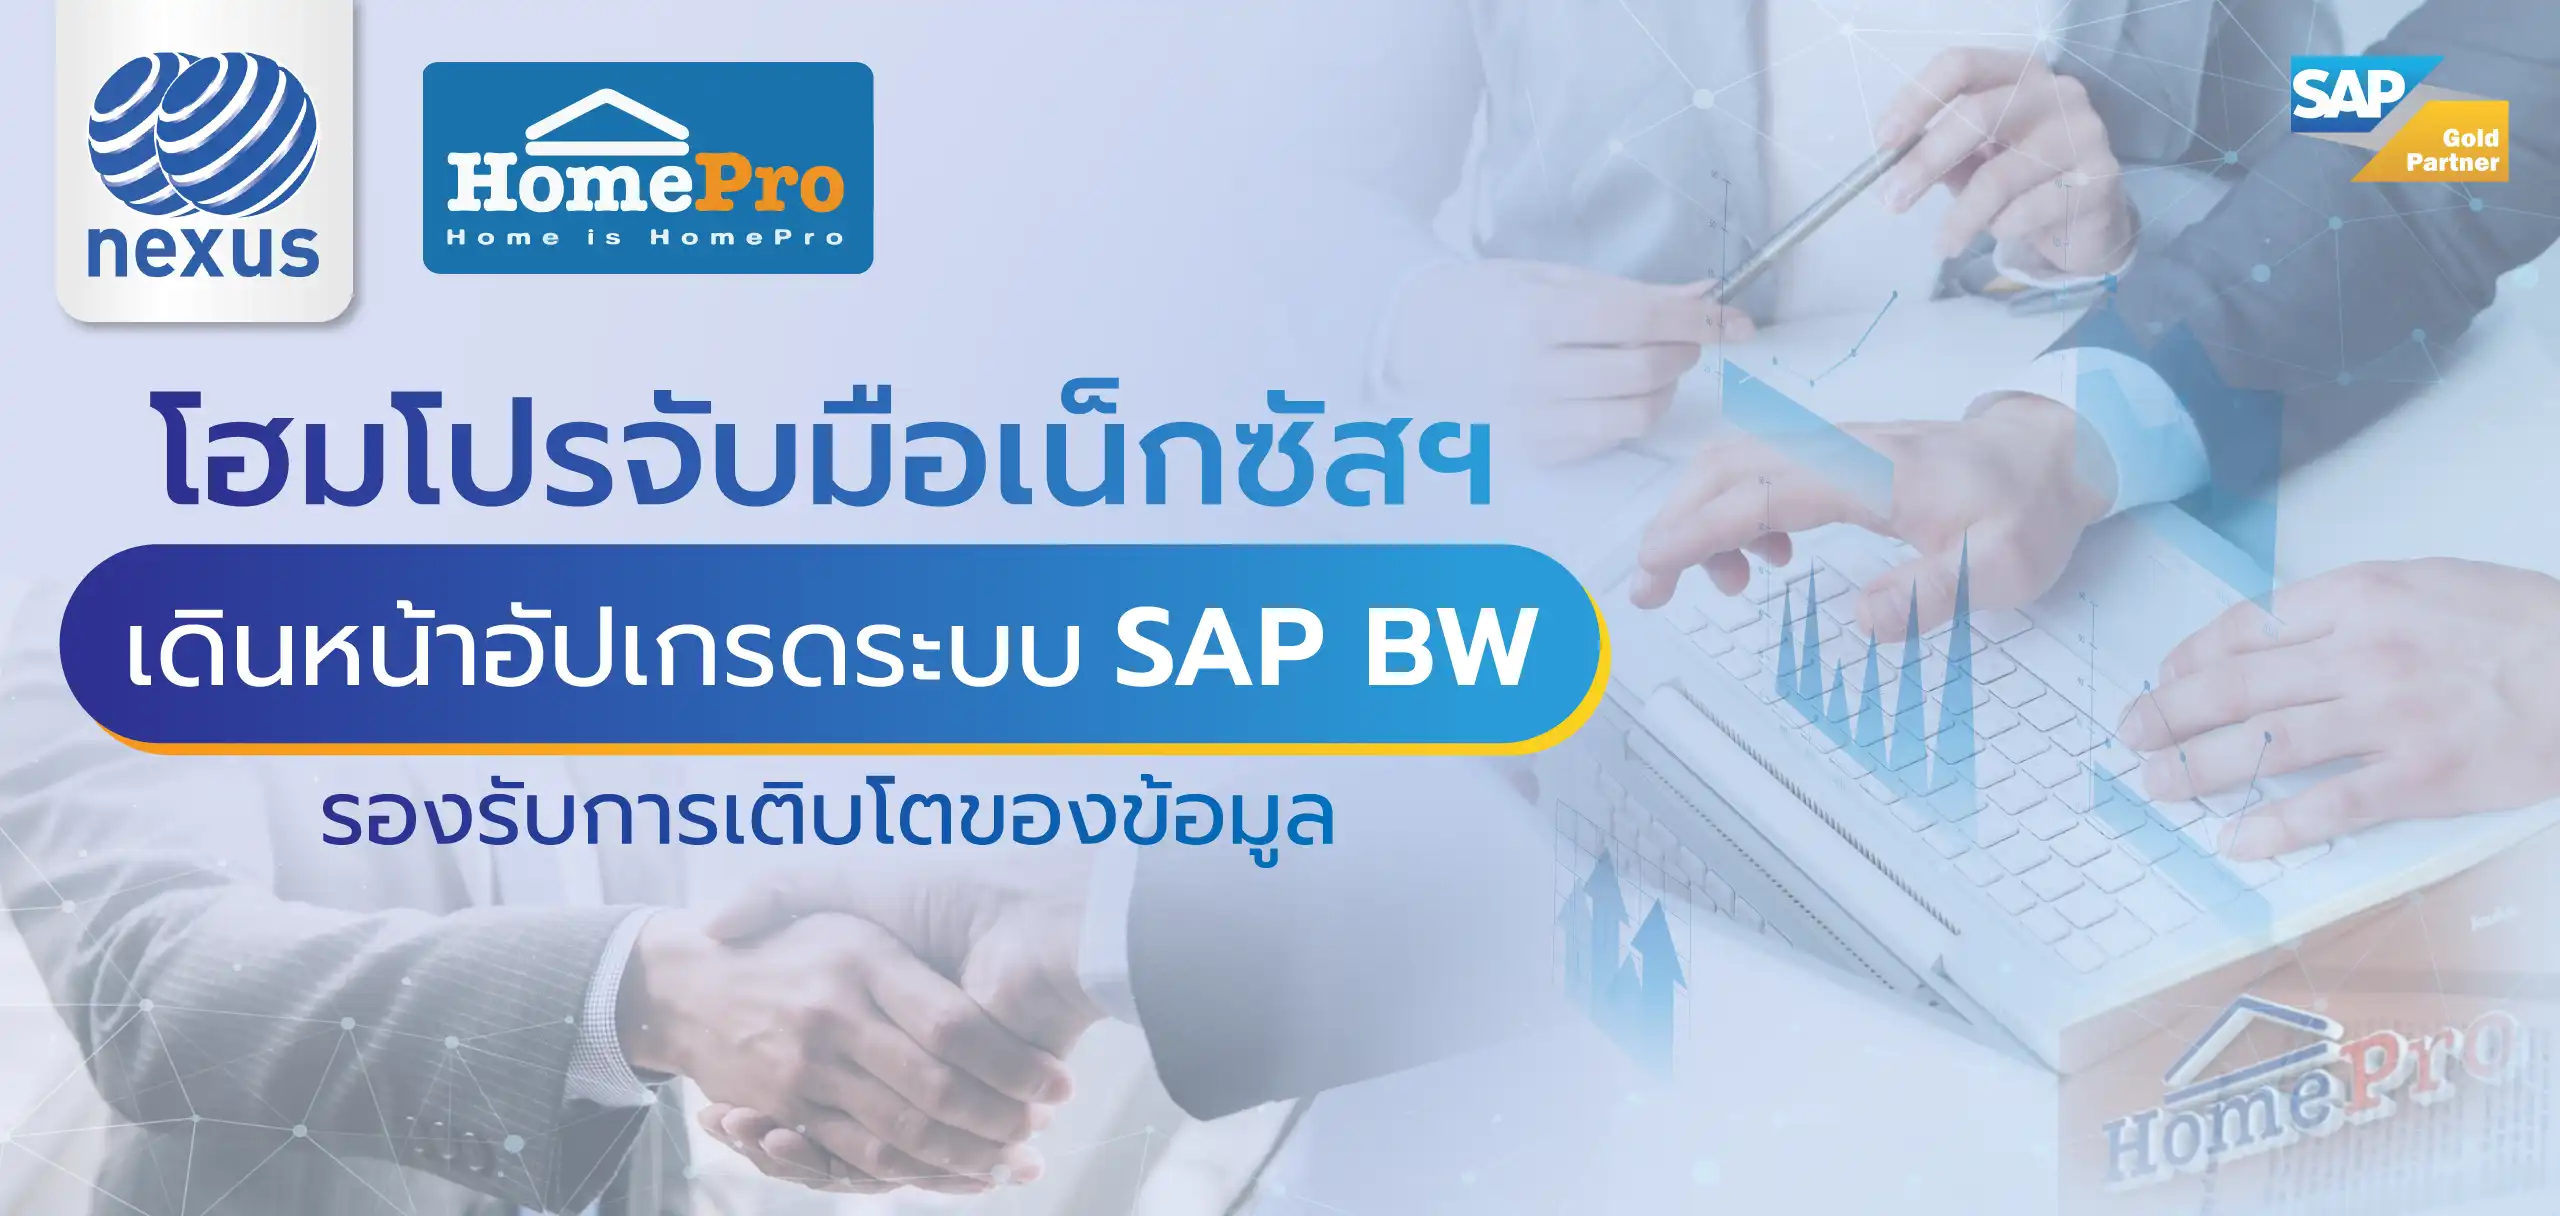 ความสามารถของ SAP Business One